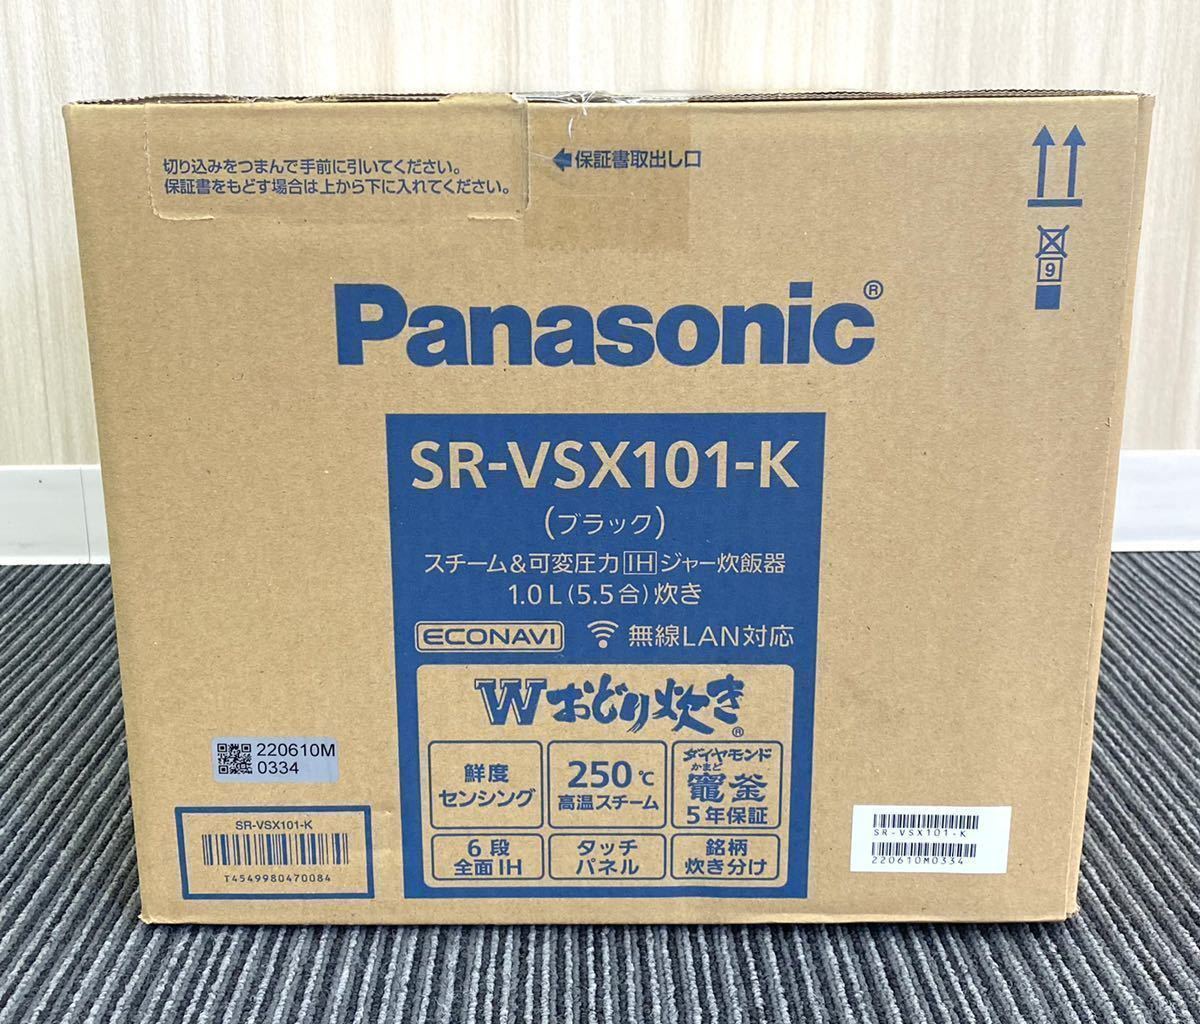 Panasonic パナソニック Wおどり炊き SR-VSX101-K スチーム可変圧力 IHジャー炊飯器5.5合炊き ブラック 無線LAN対応  新品未開封